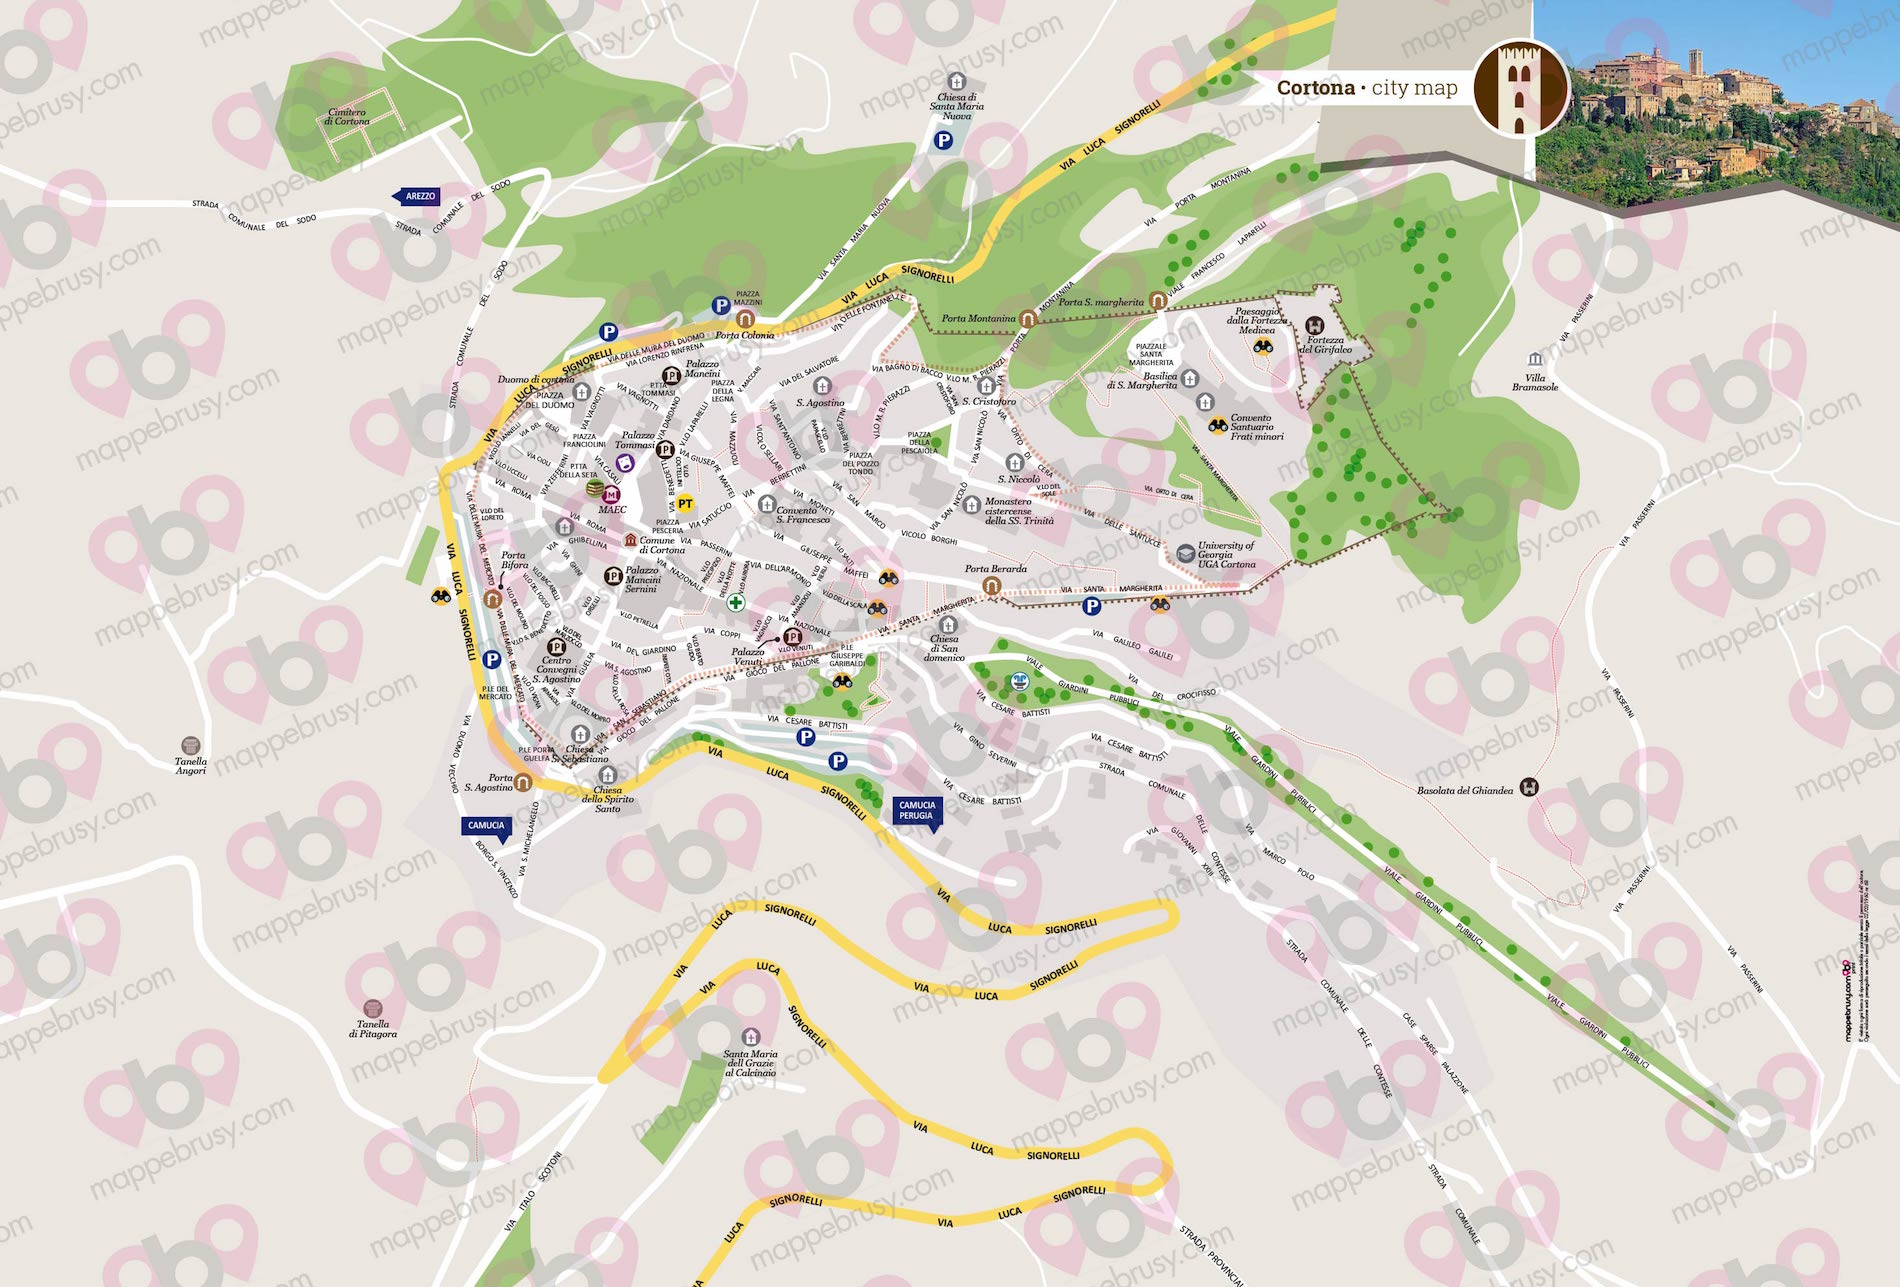 Mappa di Cortona - Cortona map - mappa Cortona - mappa personalizzata di Cortona - mappa tursitica di Cortona